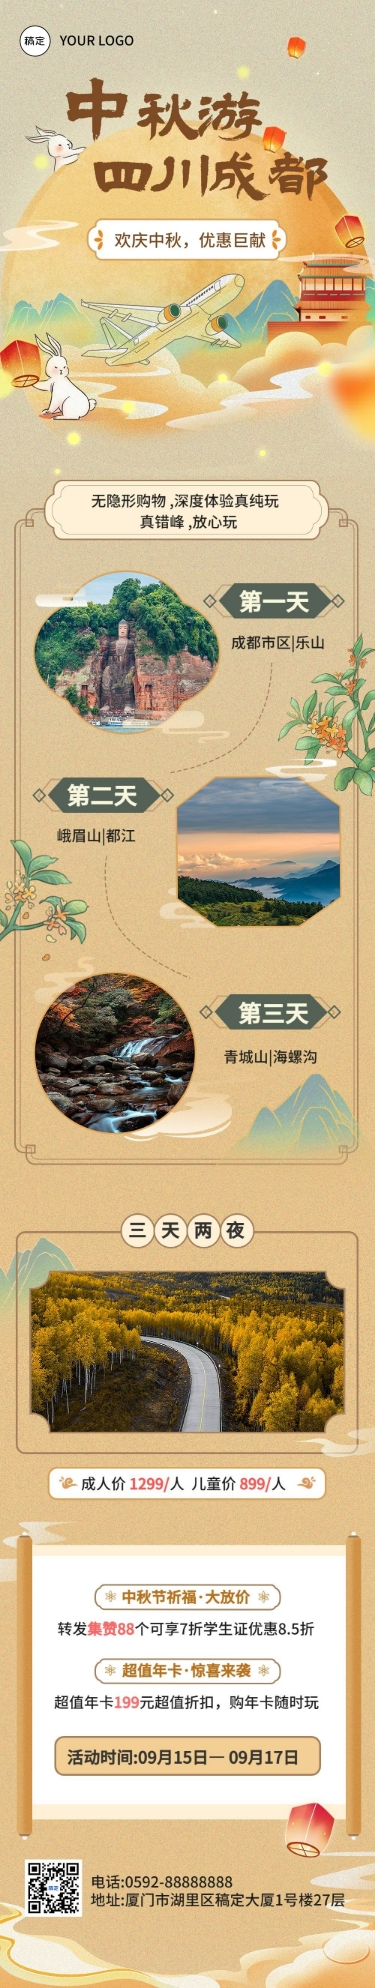 中秋节旅游节日营销水彩中国风文章长图预览效果